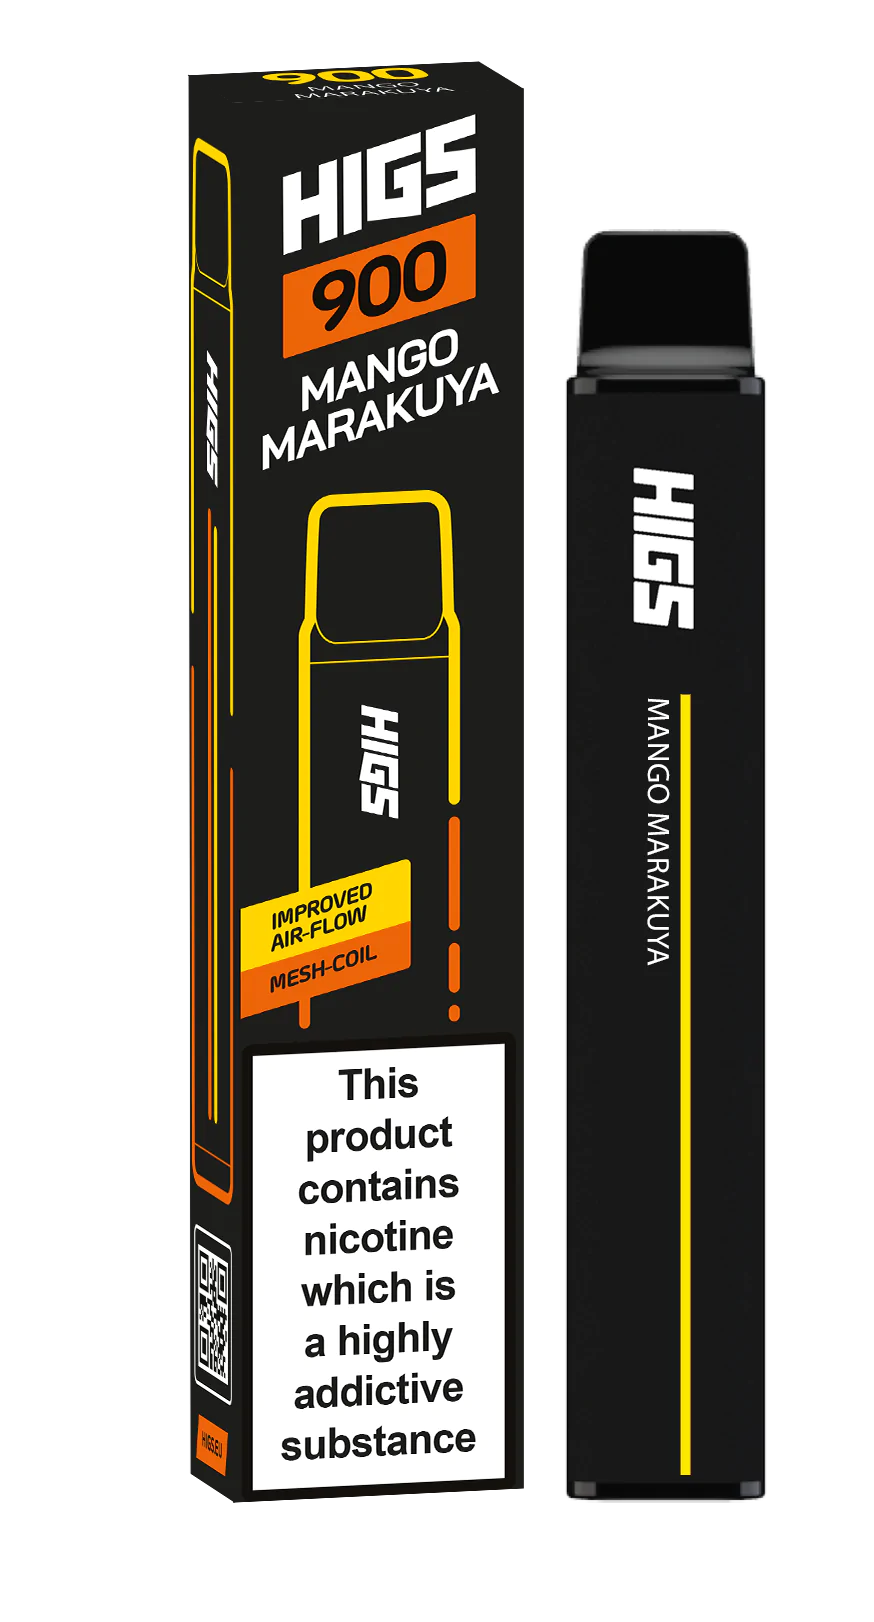 HIGS XL Mango Marakuya